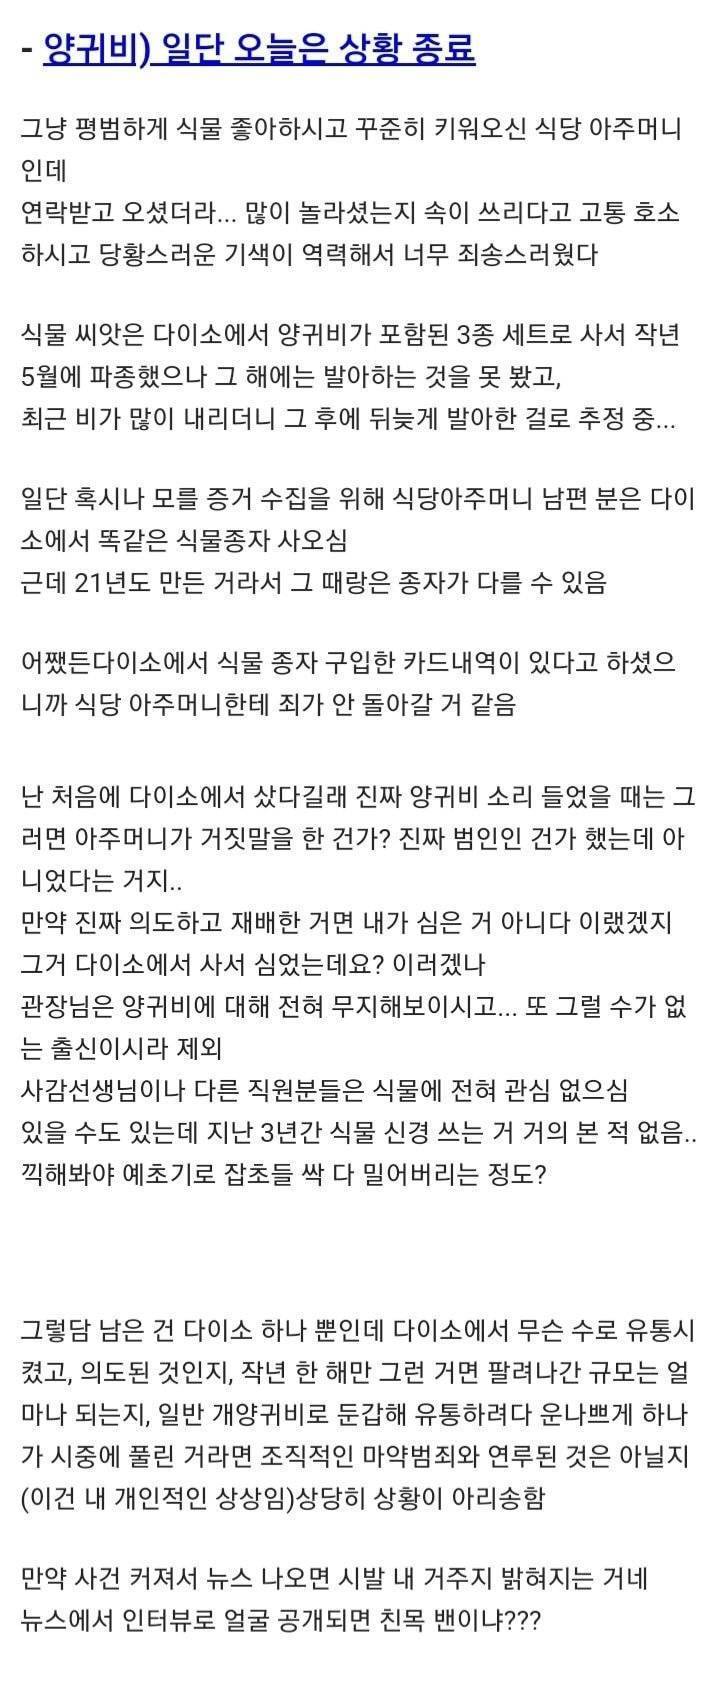 공원에 양귀비 보고 경찰에 신고한 디씨인 (feat.다이소) | 인스티즈